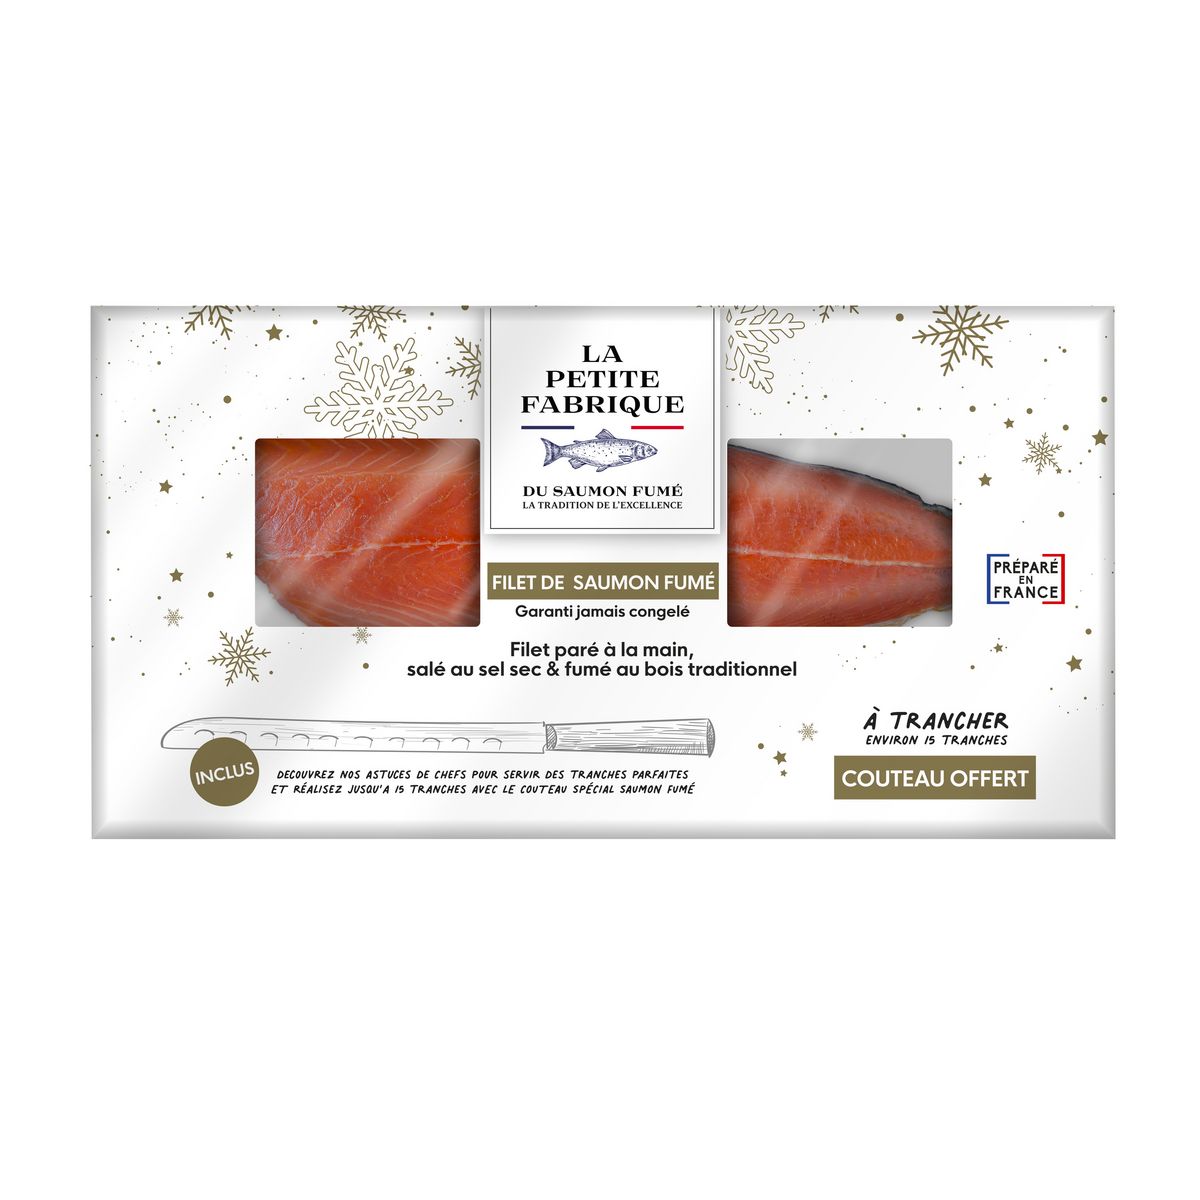 LA PETITE FABRIQUE  Filet de saumon fumé à la ficelle couteau offert 15 tranches environ 600g